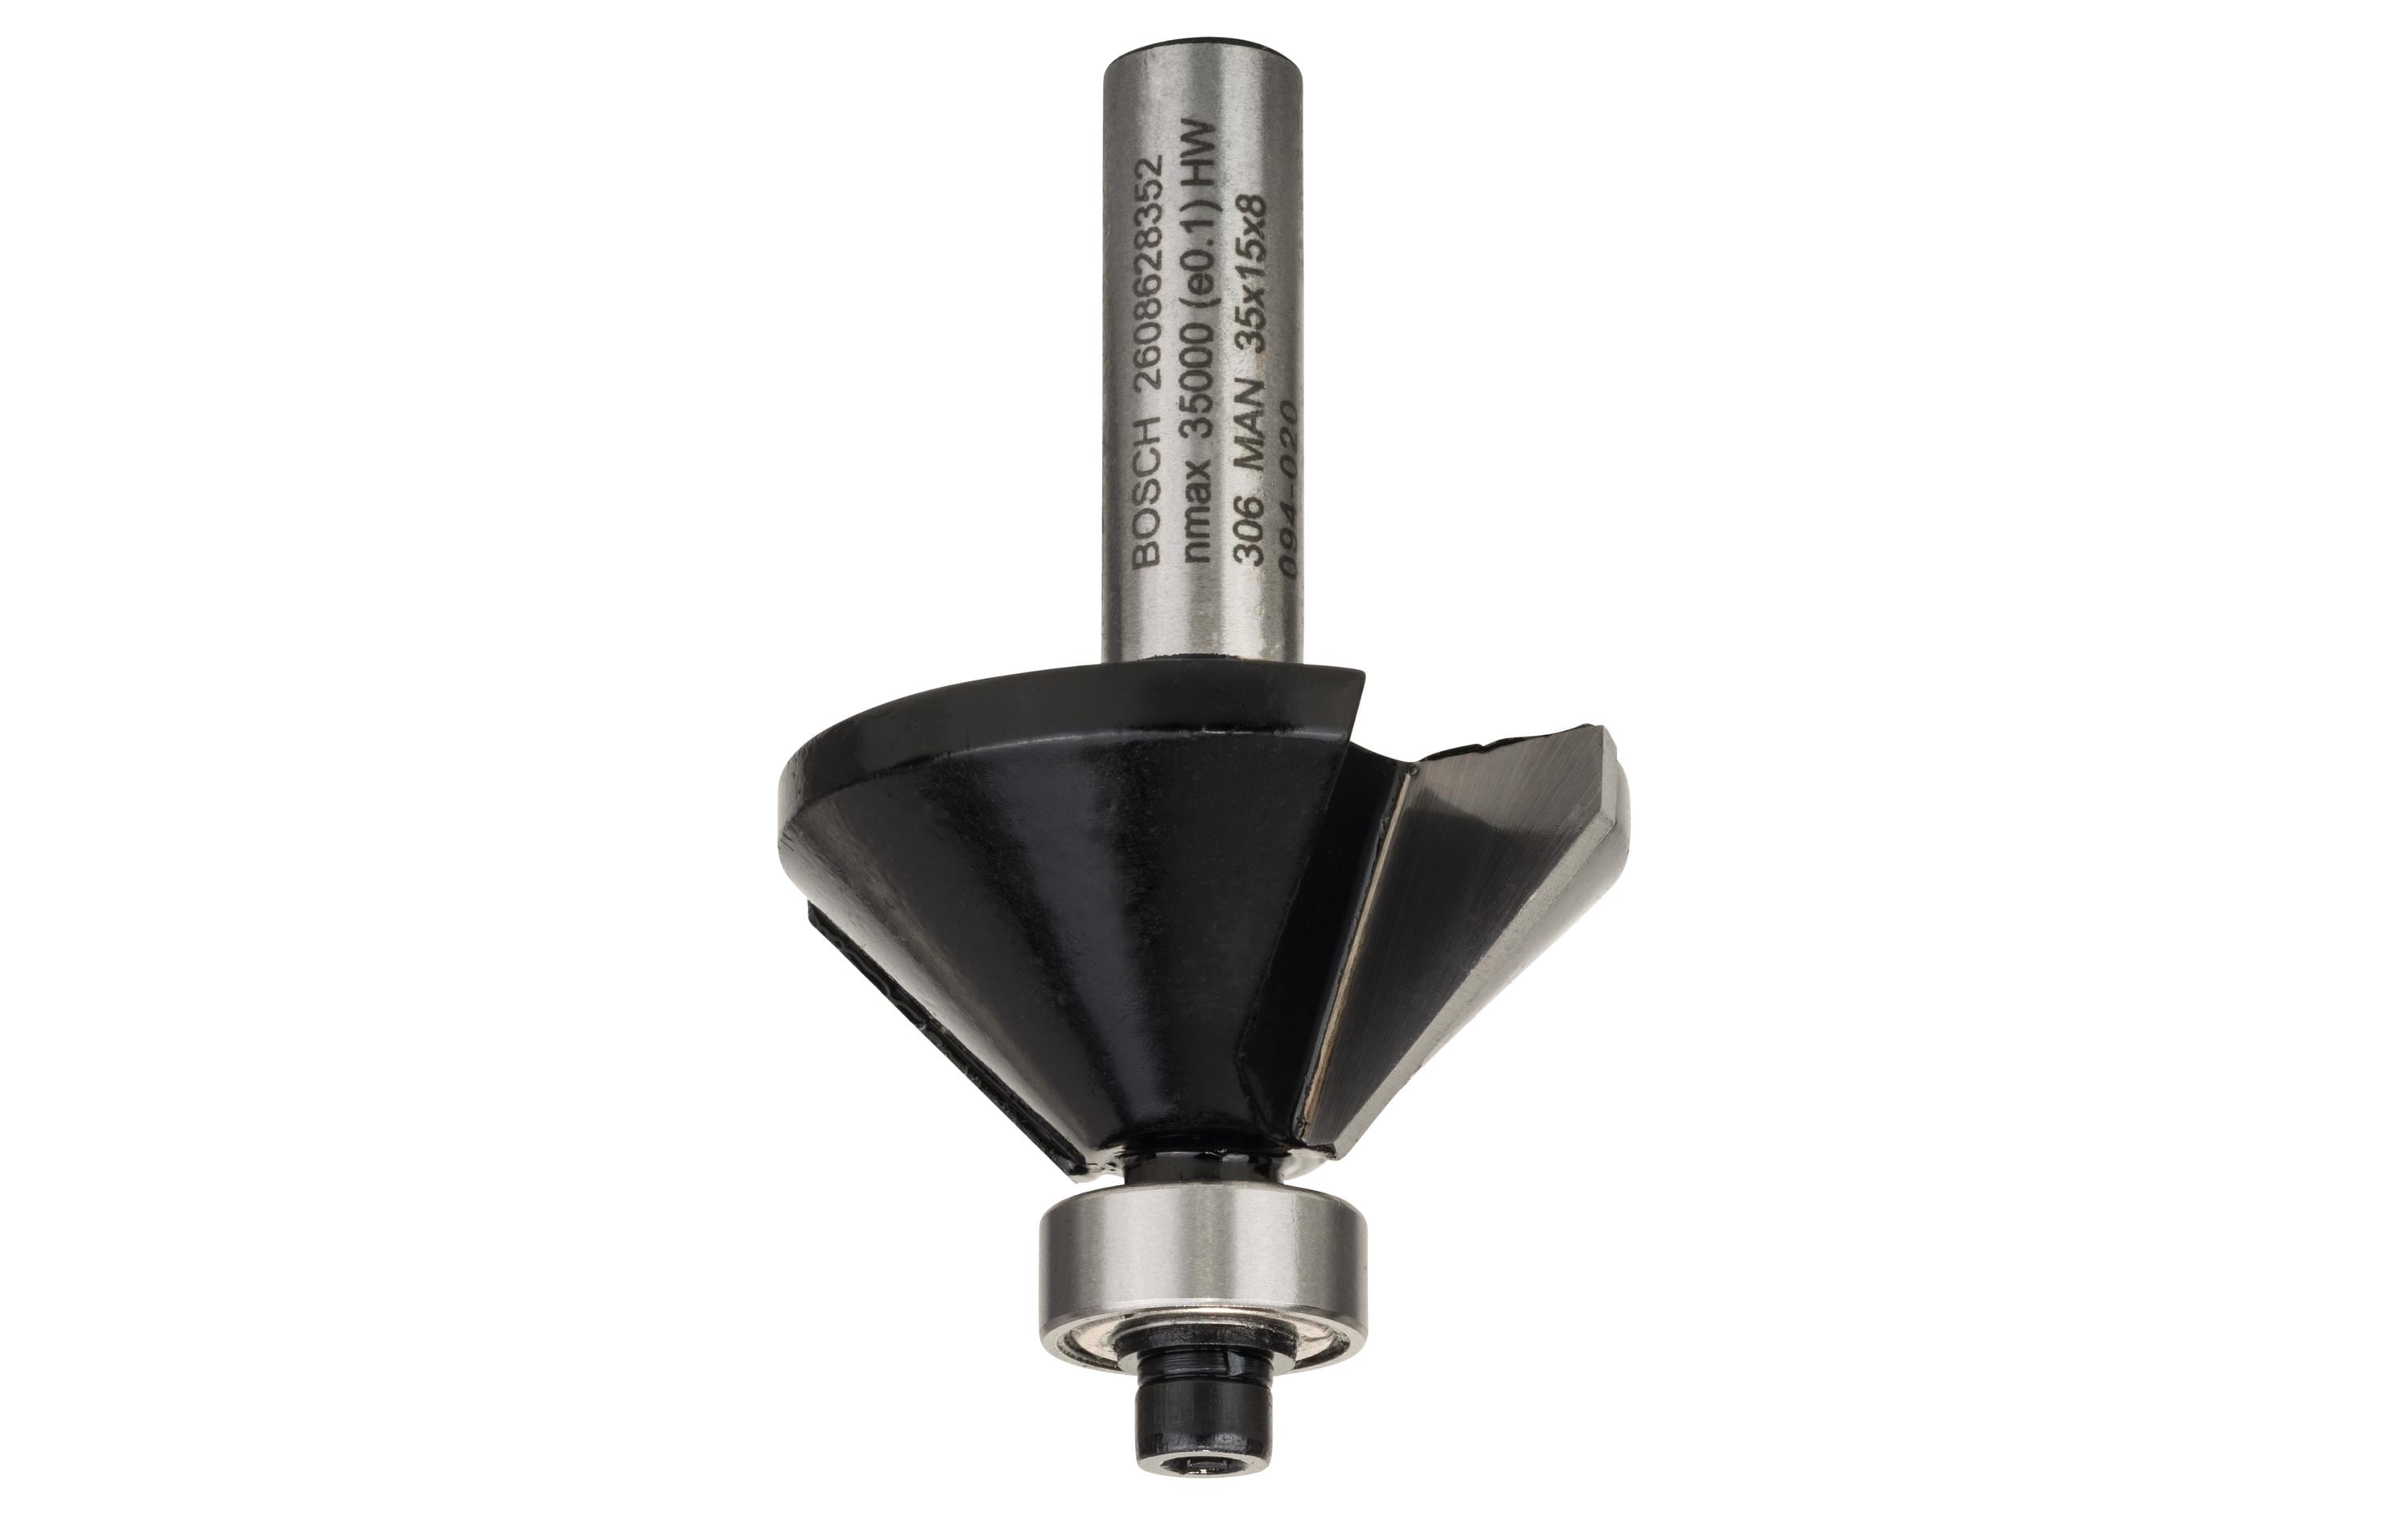 Bosch Professional Fasenfräser B: 11 mm, L: 15 mm, G: 56 mm, 45°